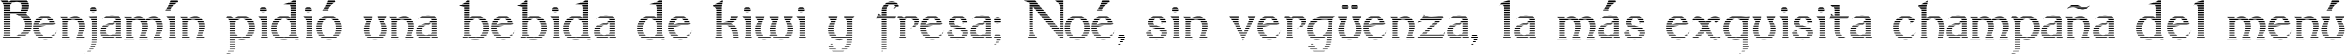 Пример написания шрифтом Dumbledor 3 Cut Up текста на испанском